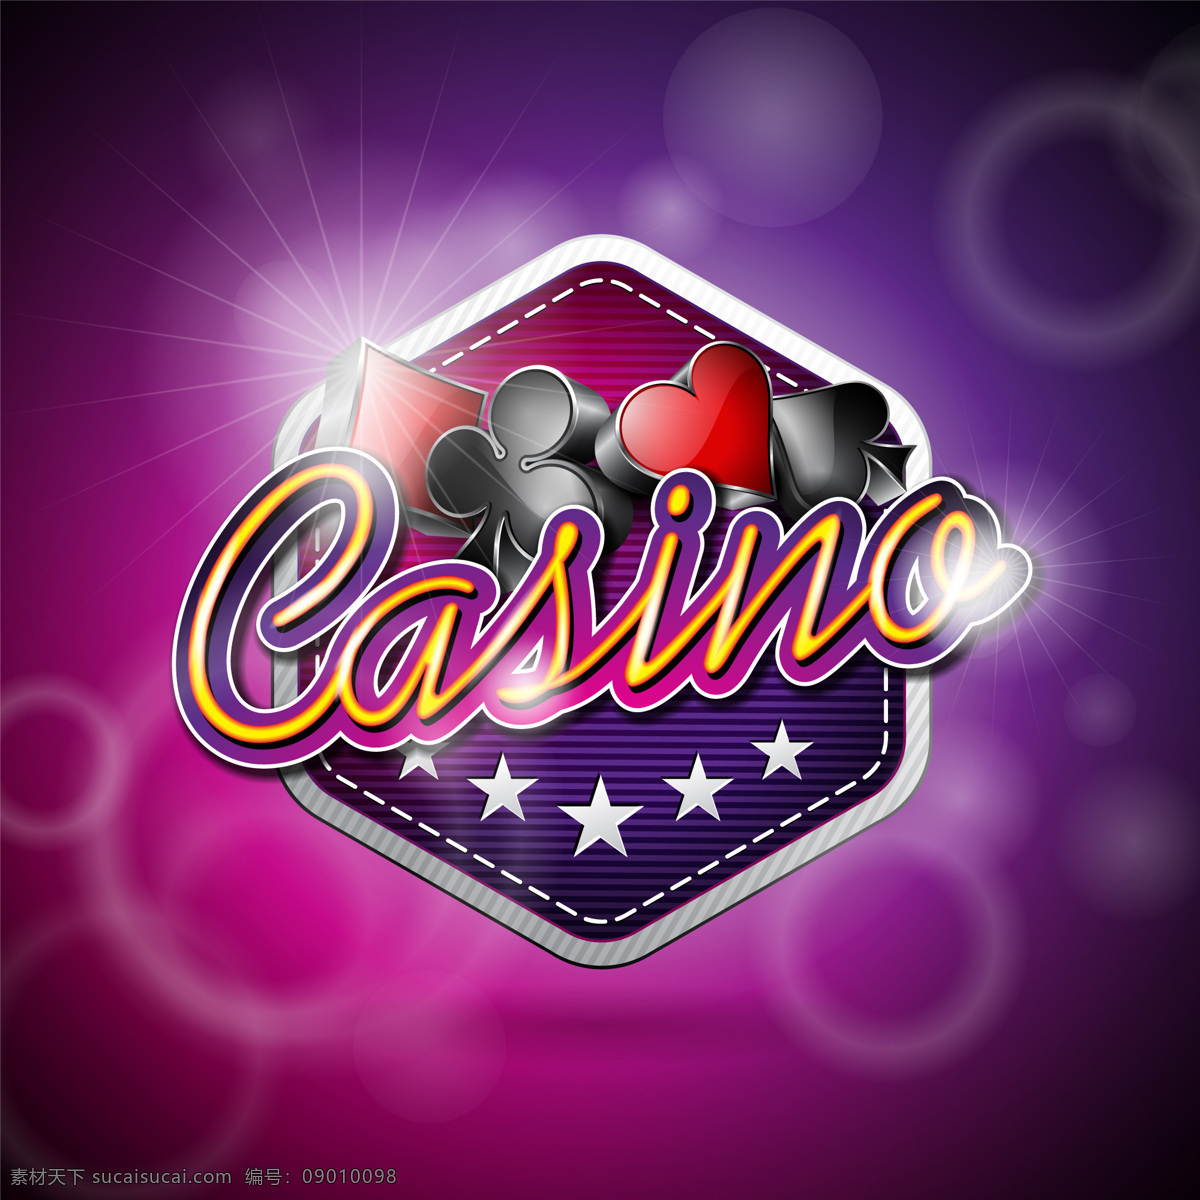 赌场背景设计 背景 颜色 游戏 赌场 扑克 骰子 筹码 轮盘赌 运气 冒险 扑克筹码 机会